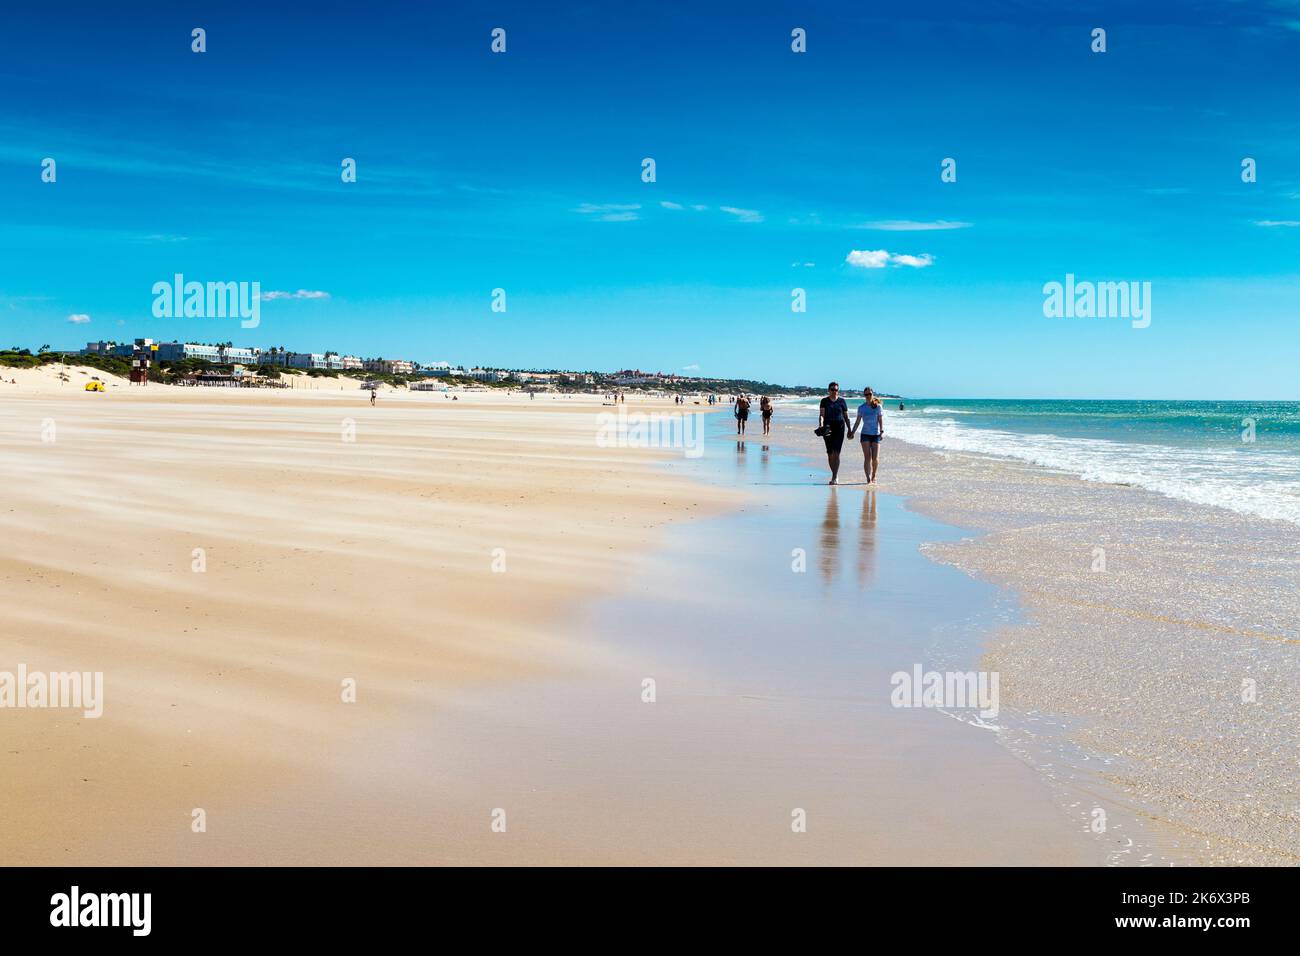 Dry sand swept by wind across the beach, people walking along Playa de la Barrosa, Cadiz, Spain Stock Photo